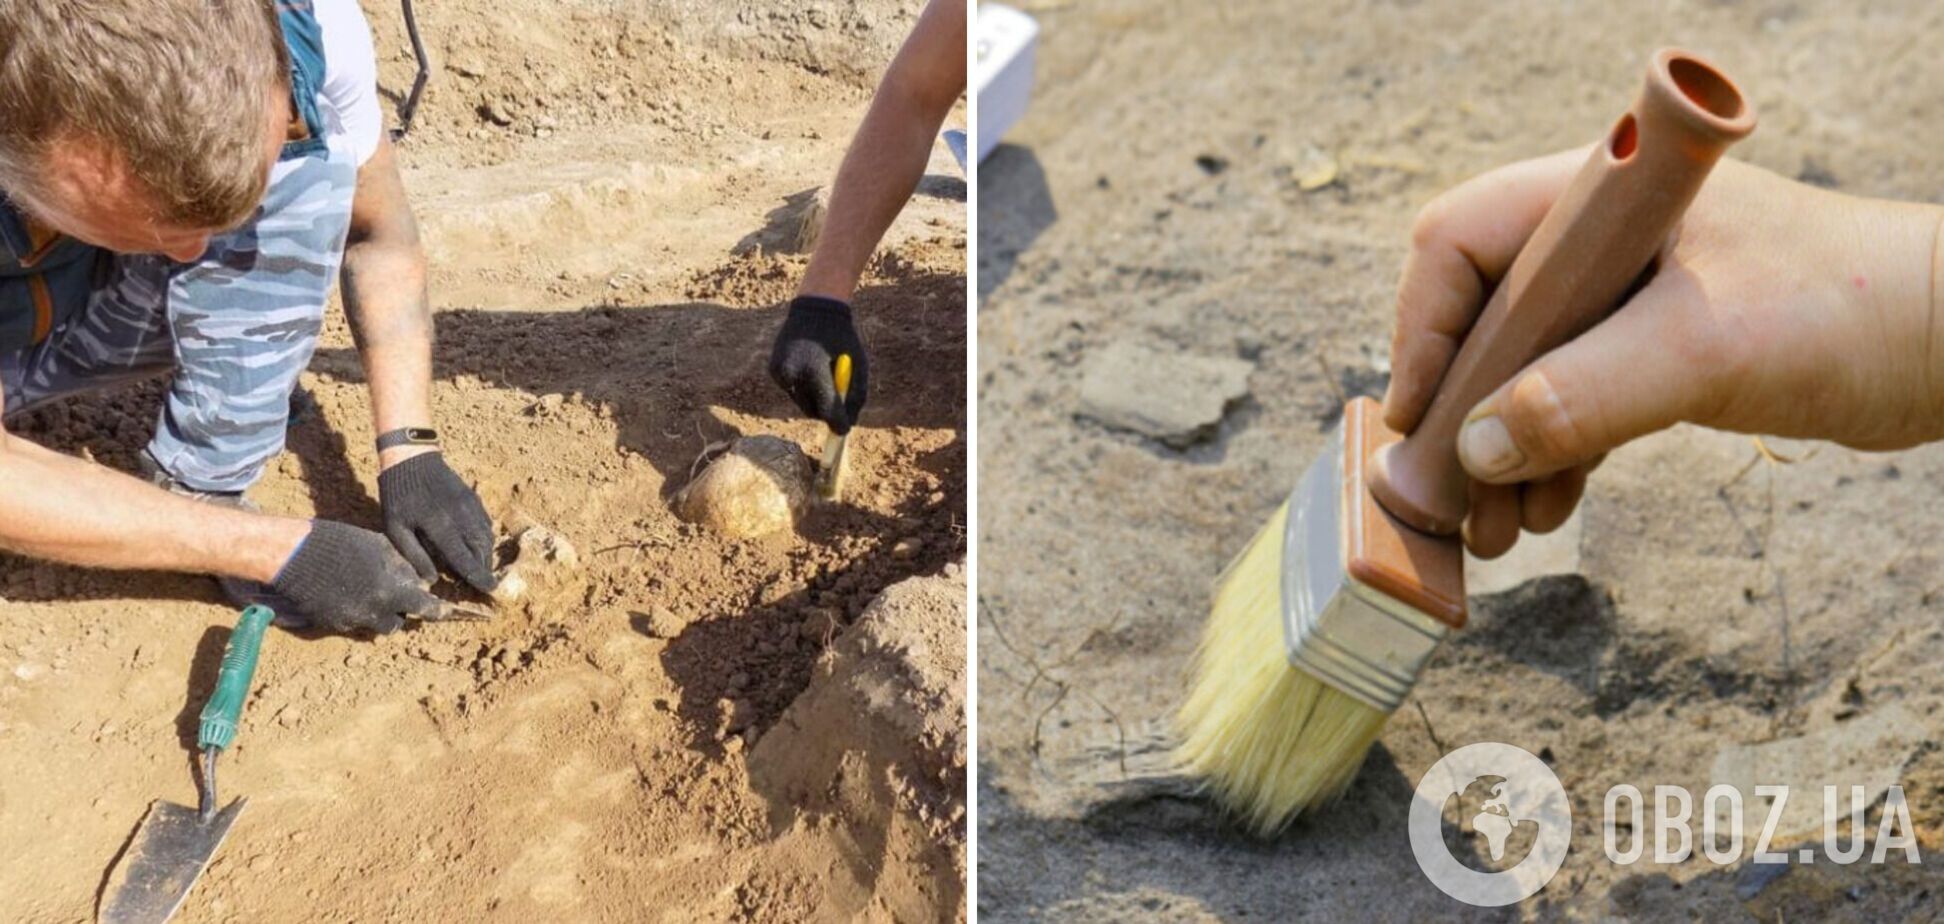 Археологи розкопали у Китаї 14 стародавніх гробниць: знайдено бронзові вироби та кам’яні прикраси, яким може бути більше 2 тисяч років 